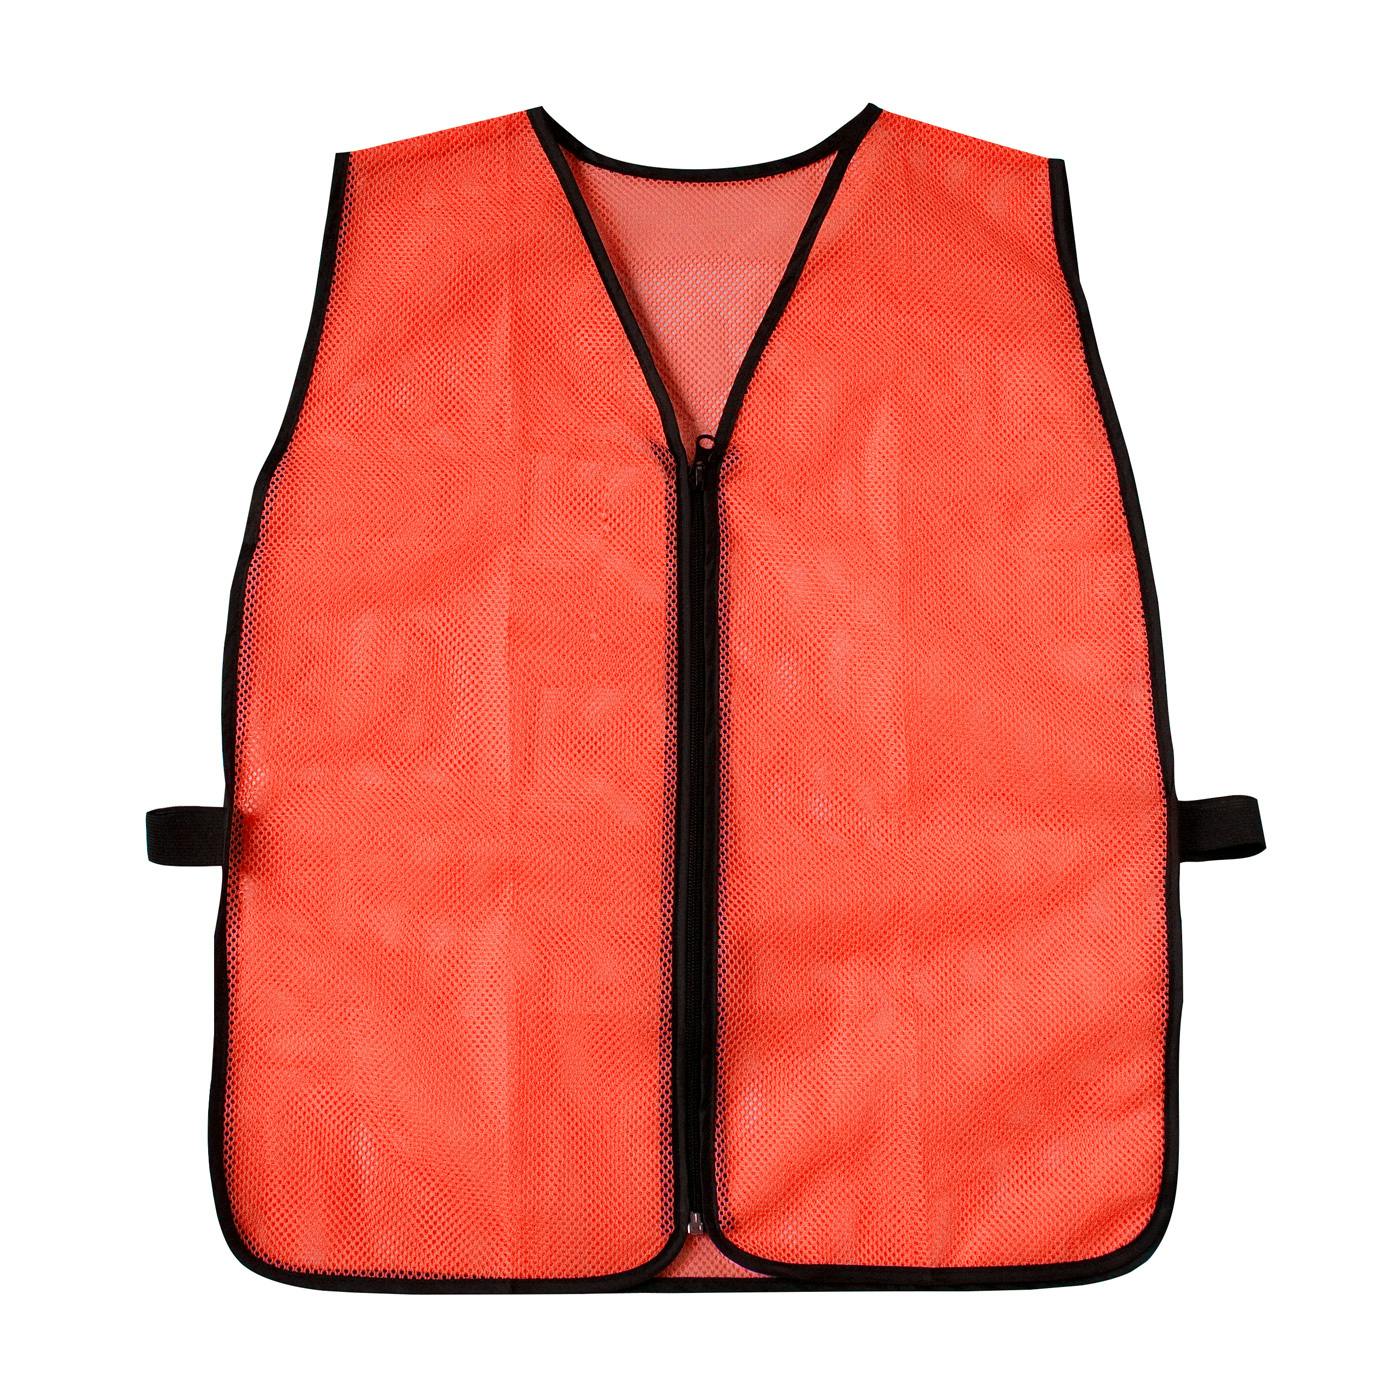 Non-ANSI Mesh Safety Vest, Hi-Vis Orange (300-0800-BULK) - OS